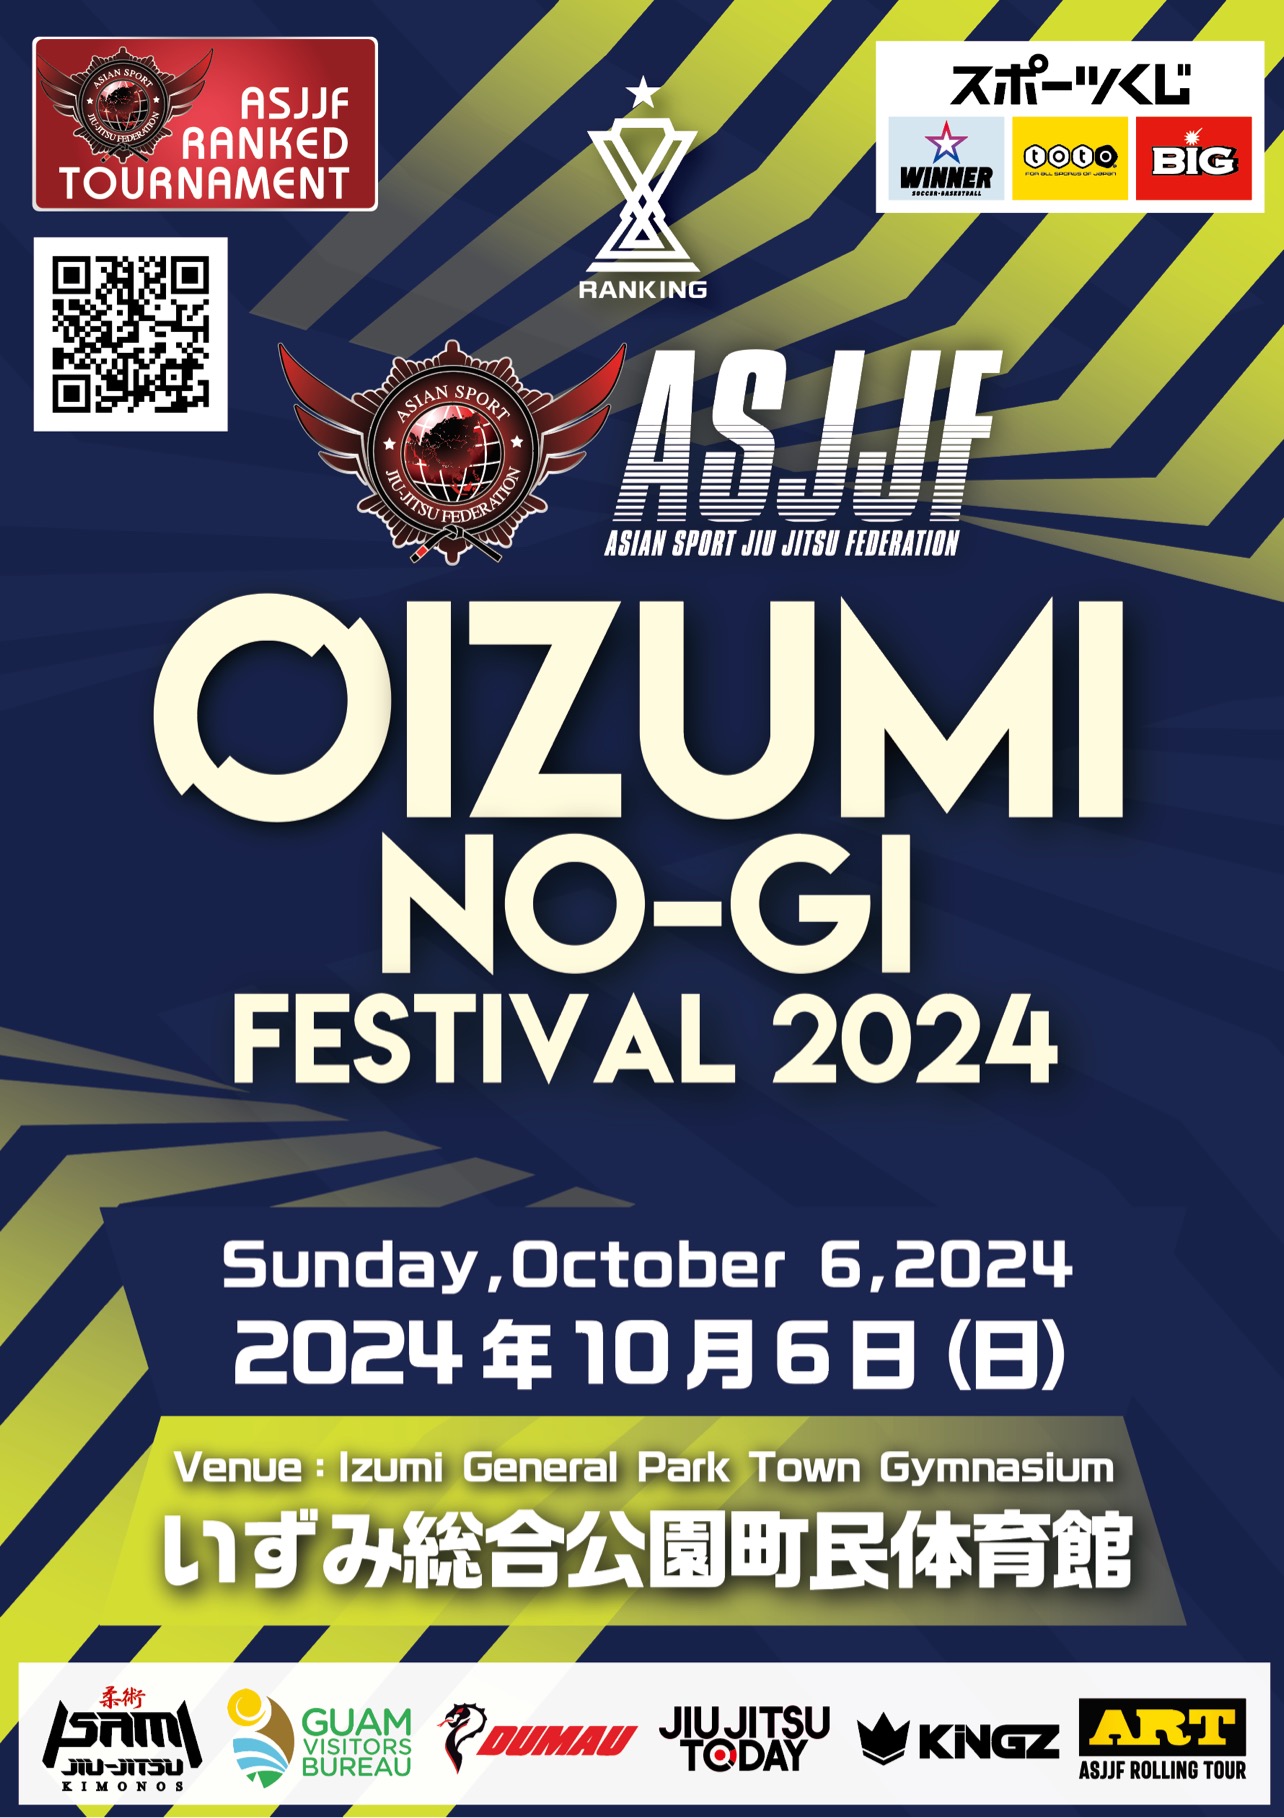 oizumi no-gi festival 2024 (no-gi event)